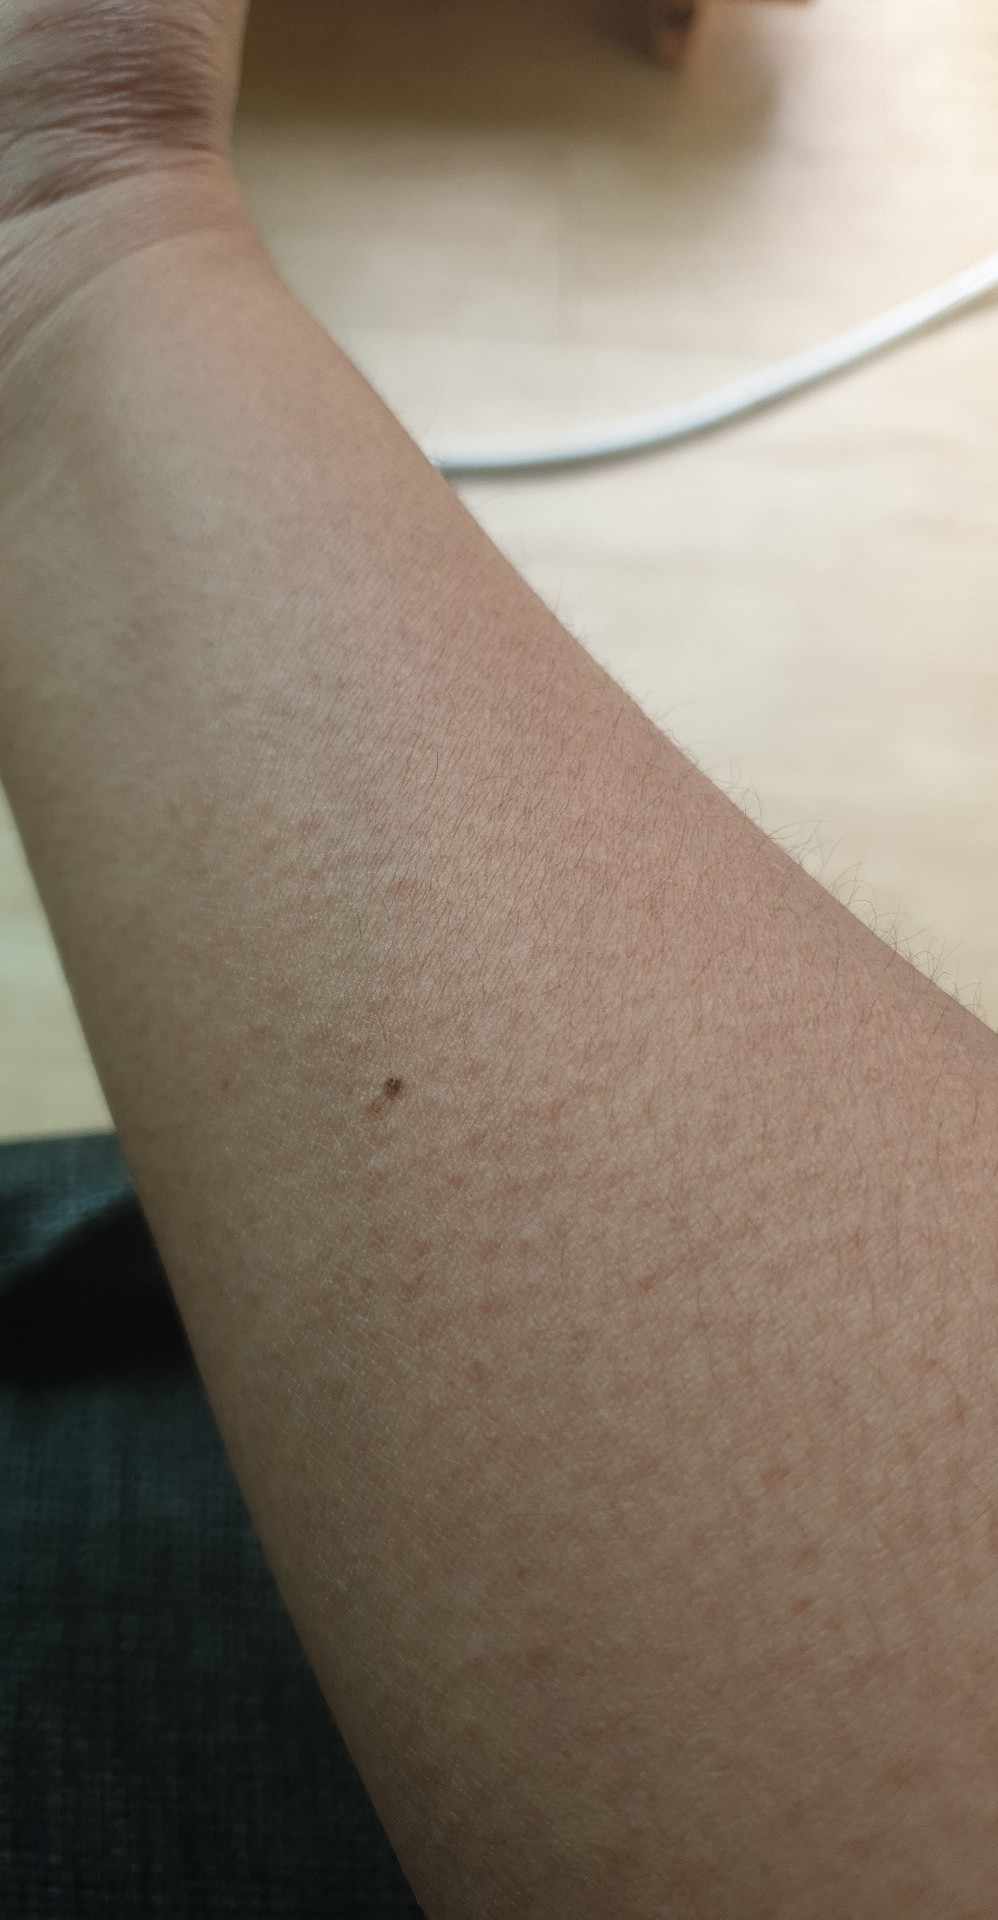 skin rash